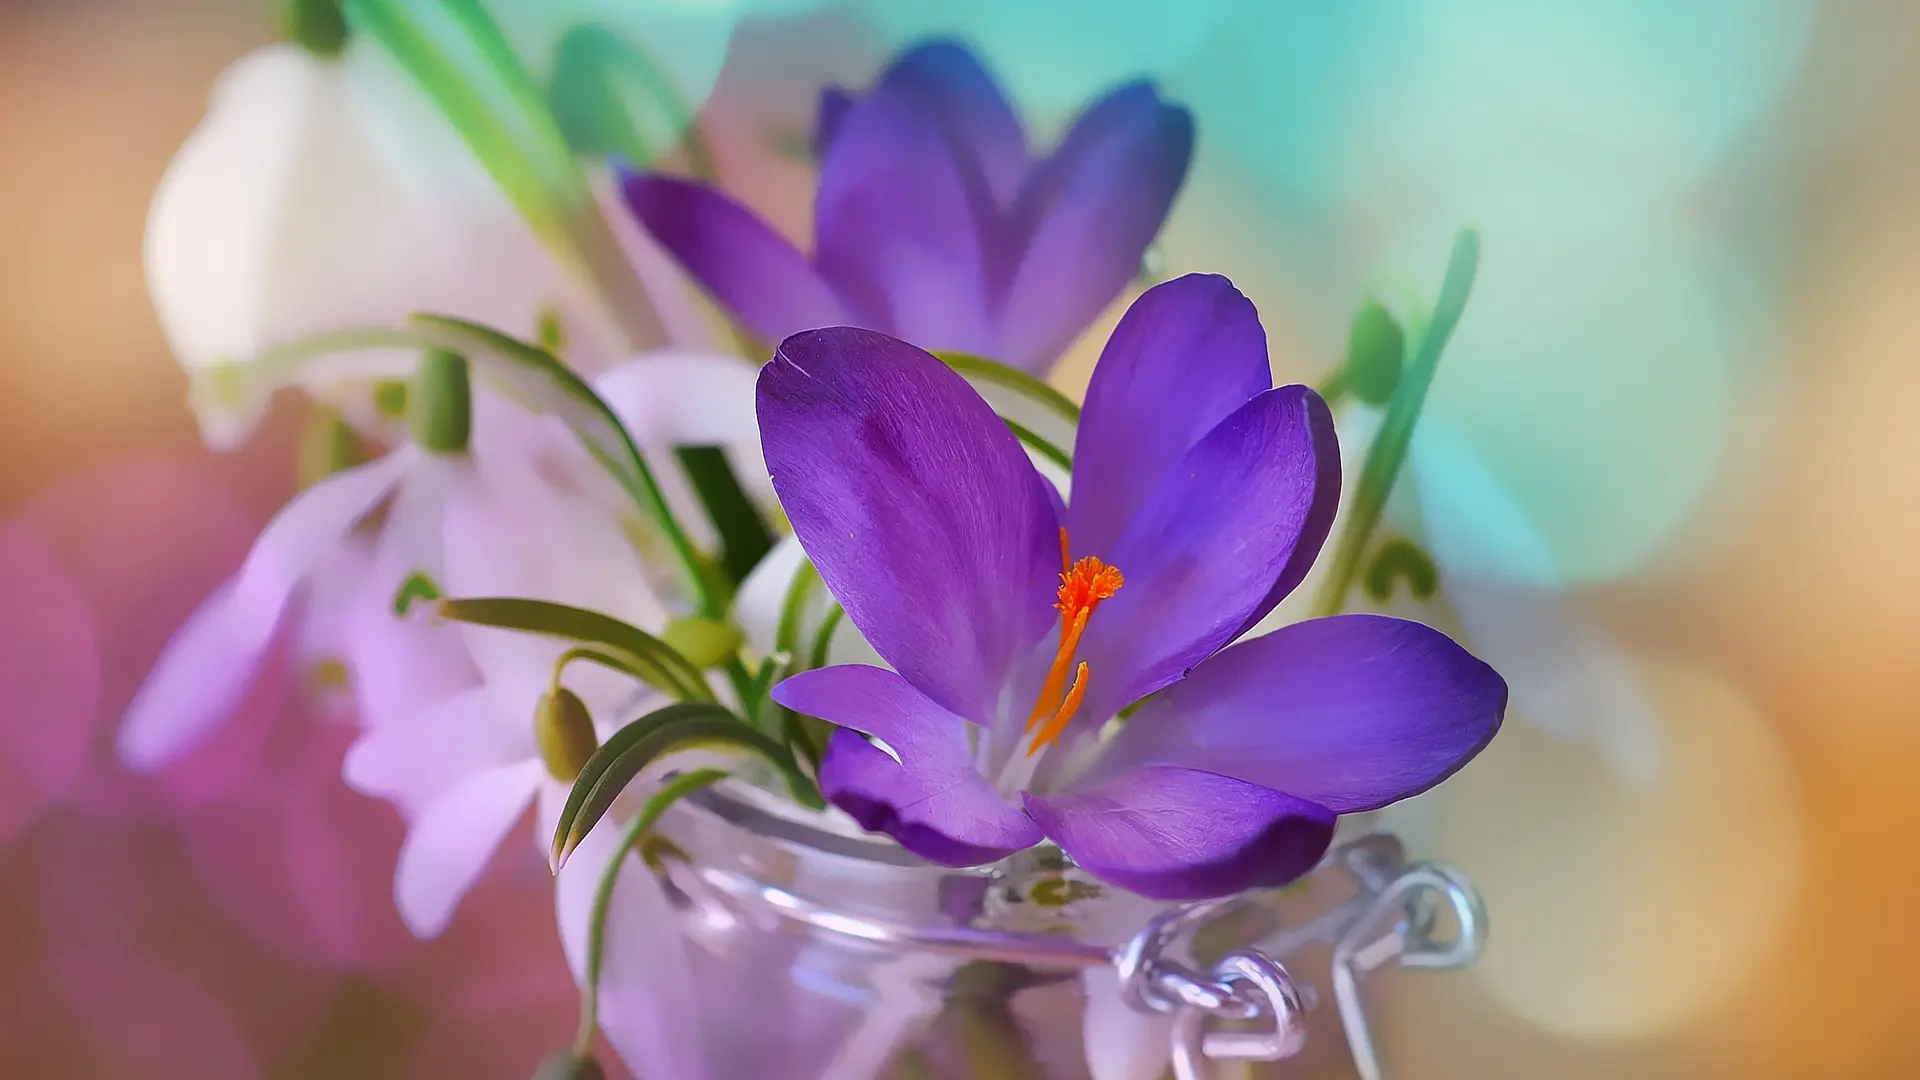 đurđevak cveće  cvet pixabay-6632248e87a47.webp